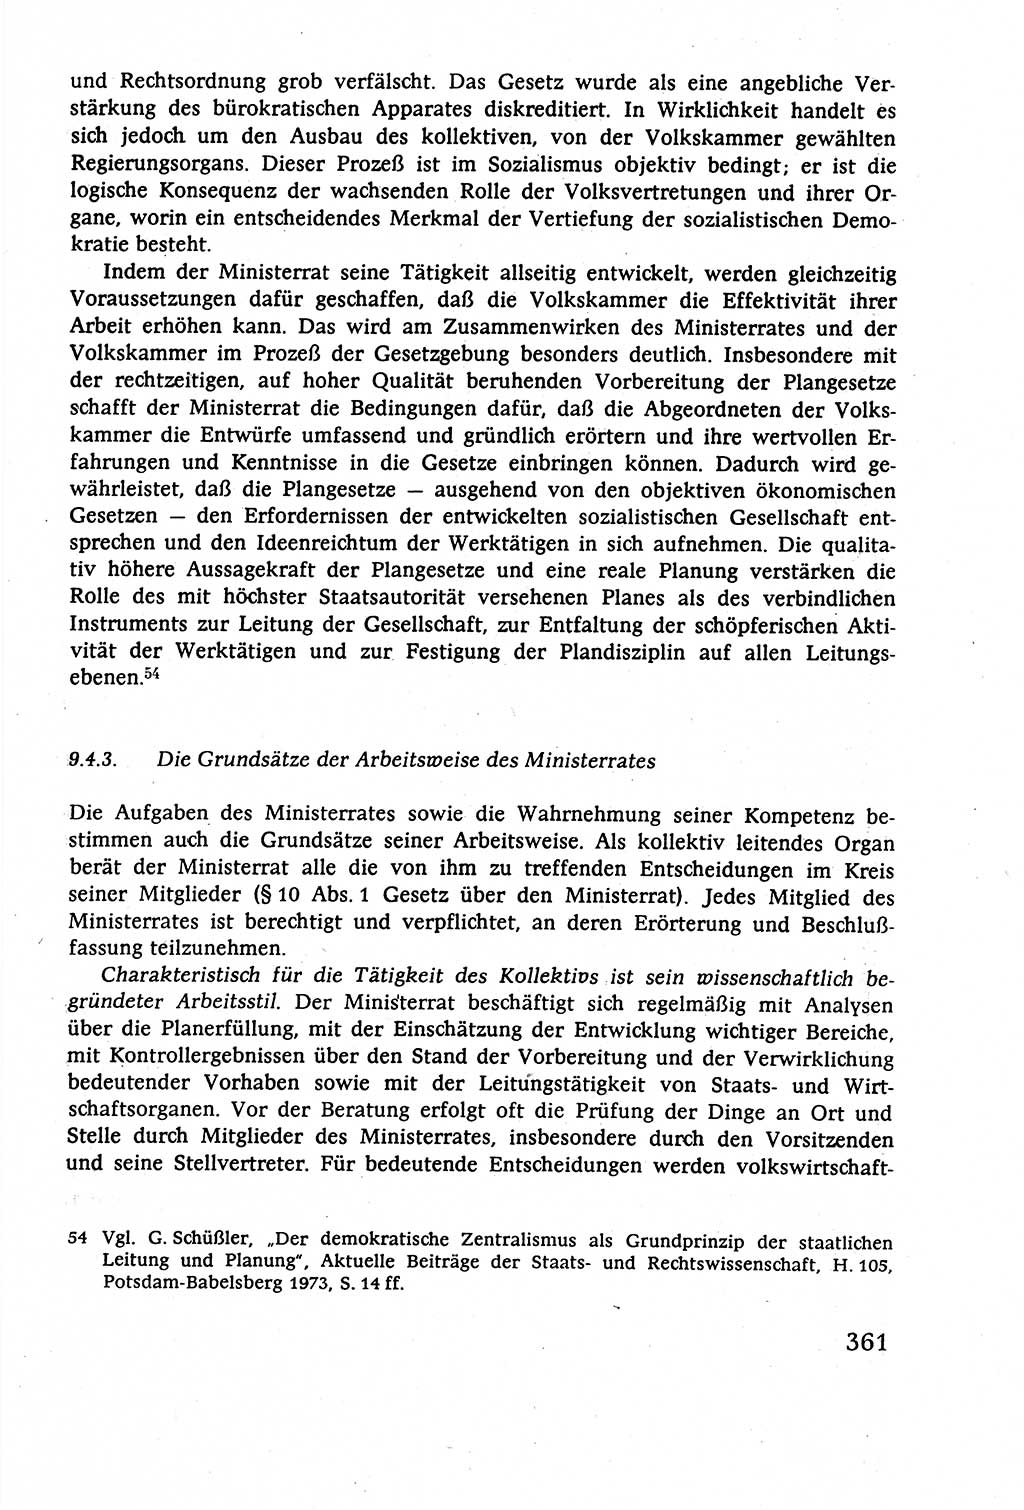 Staatsrecht der DDR (Deutsche Demokratische Republik), Lehrbuch 1977, Seite 361 (St.-R. DDR Lb. 1977, S. 361)